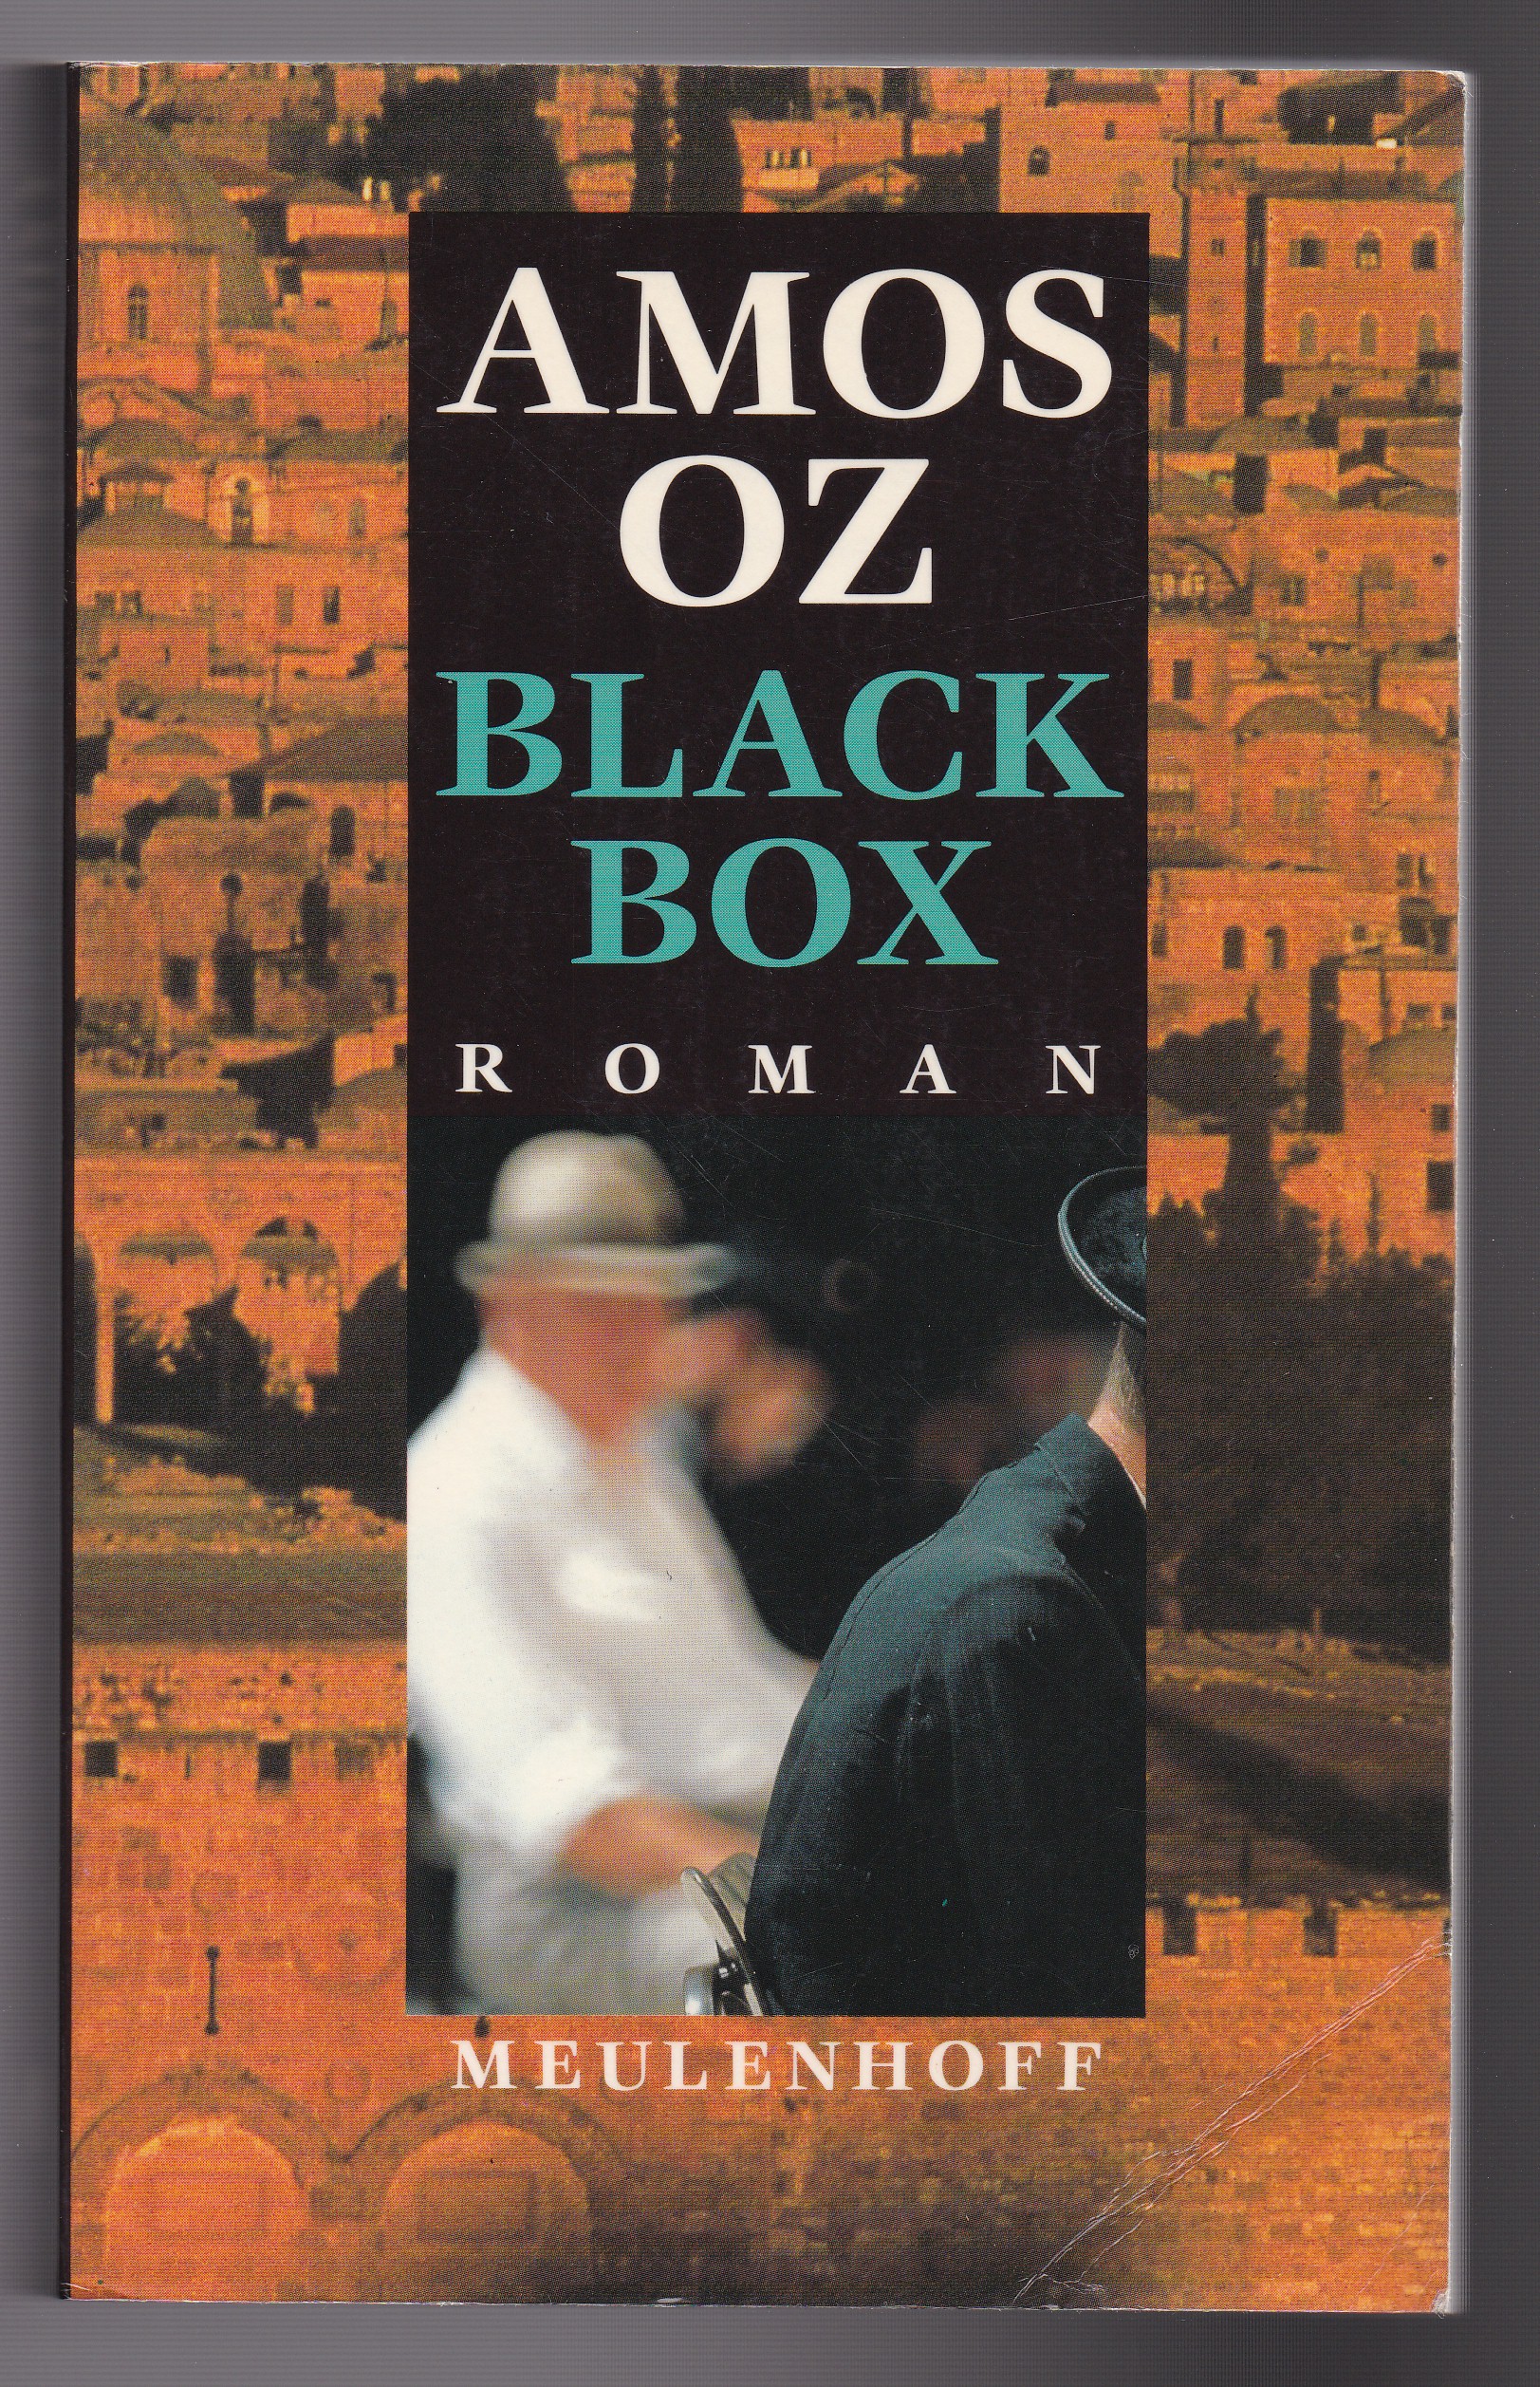 Oz, Amos - Black box. Roman. Uit het hebreeuws vertaald door Hilde Pach